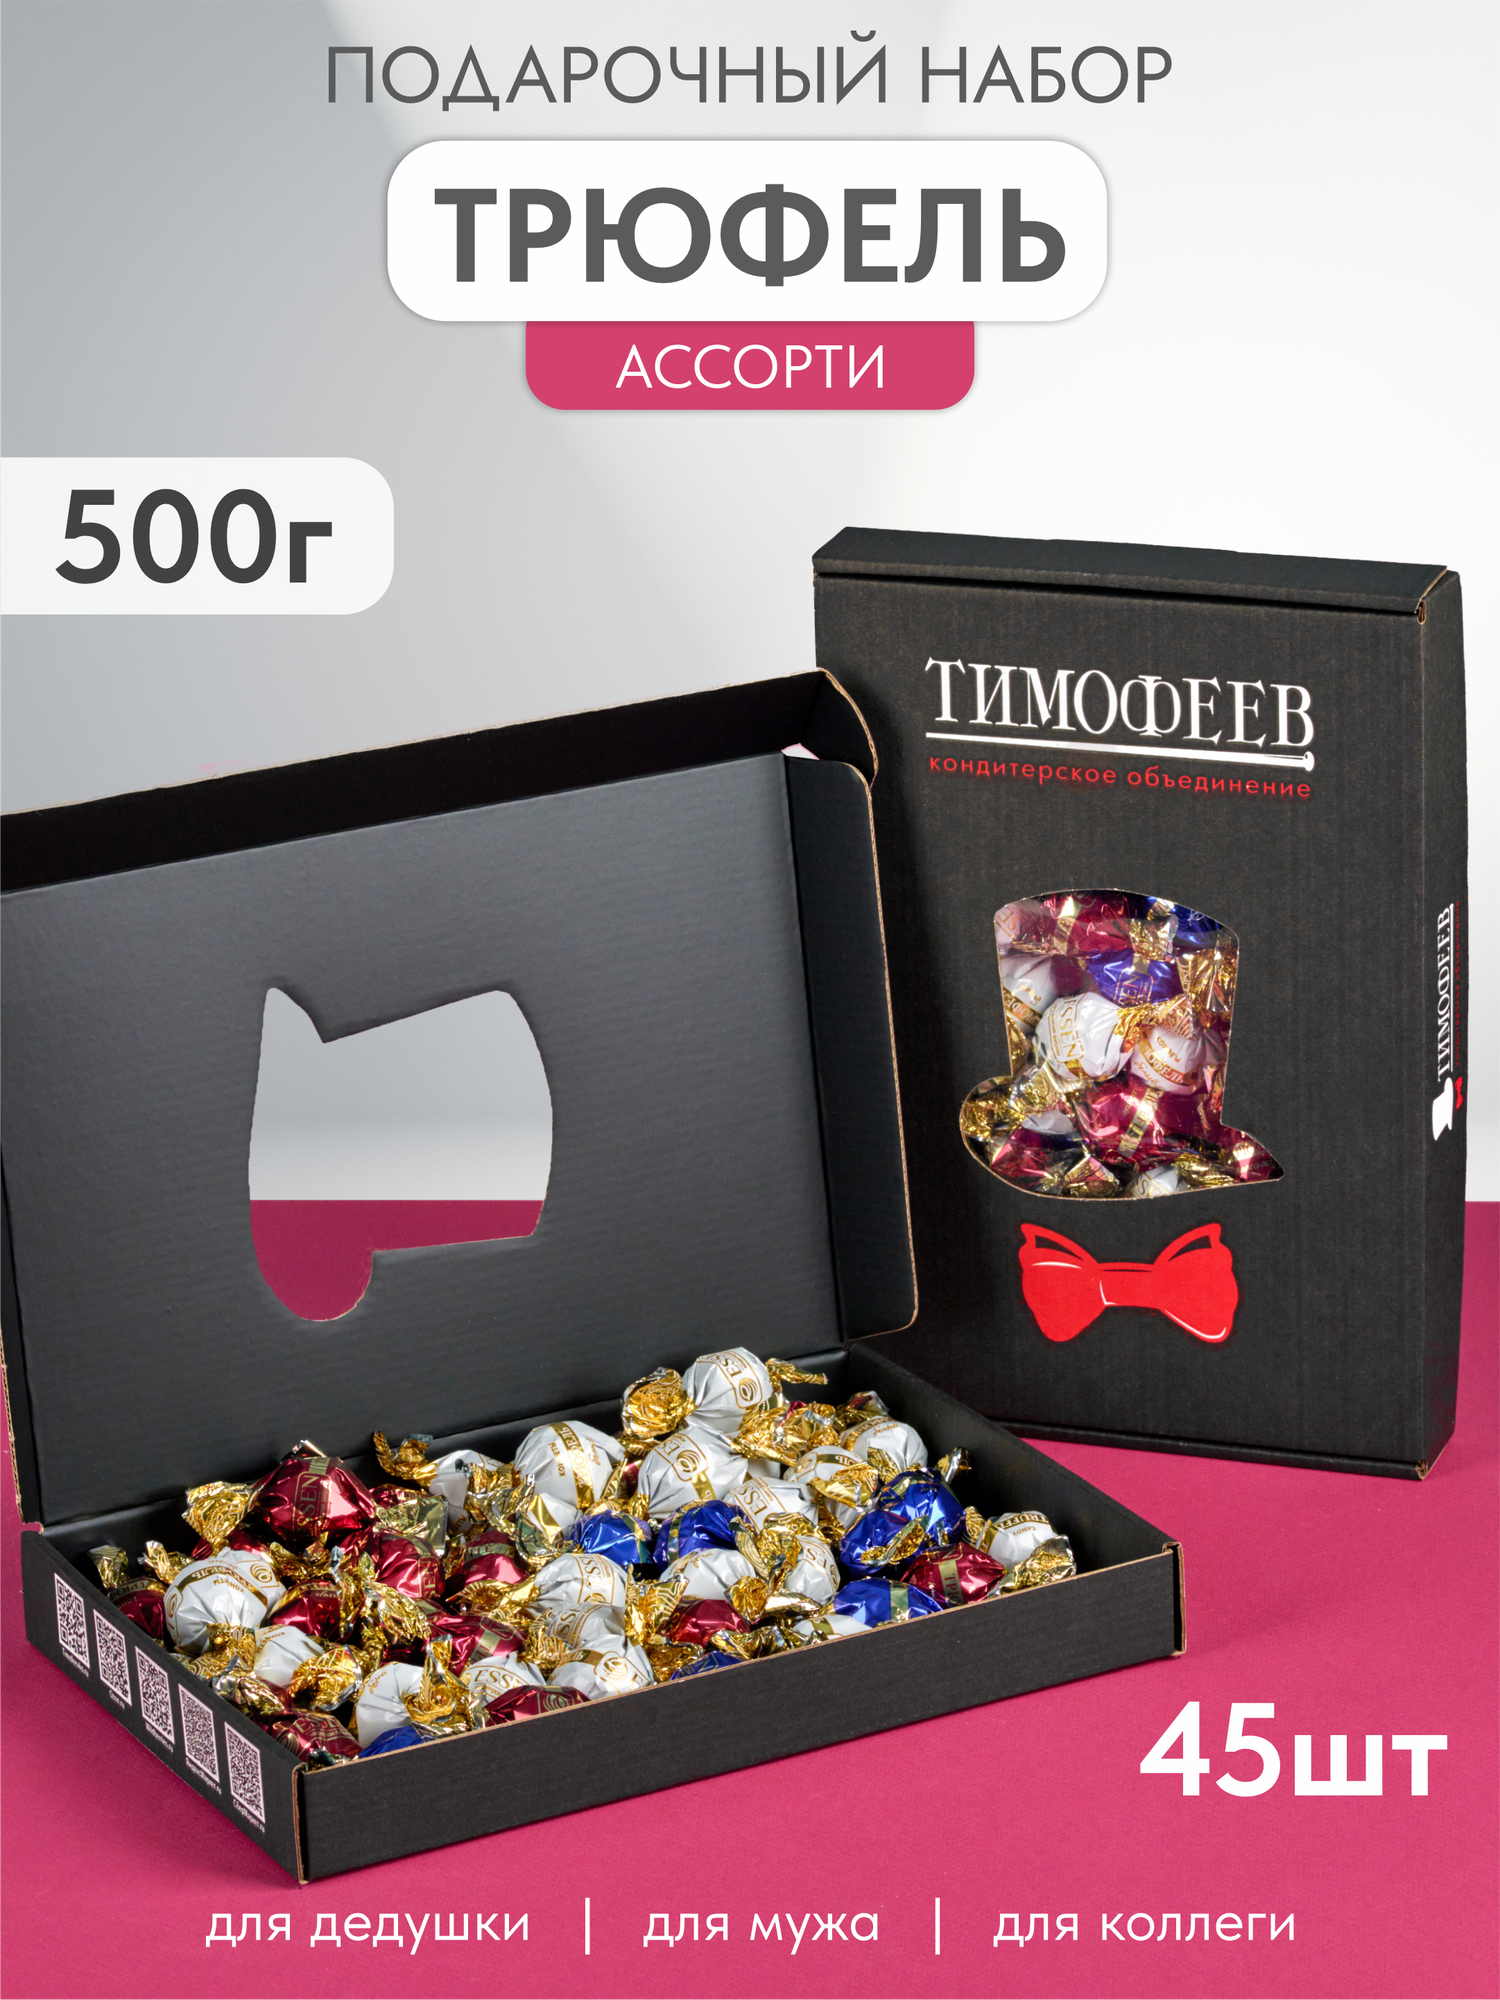 Подарочный набор трюфельных конфет "TRUFFLE" в коробке, Тимофеев ко, 500г